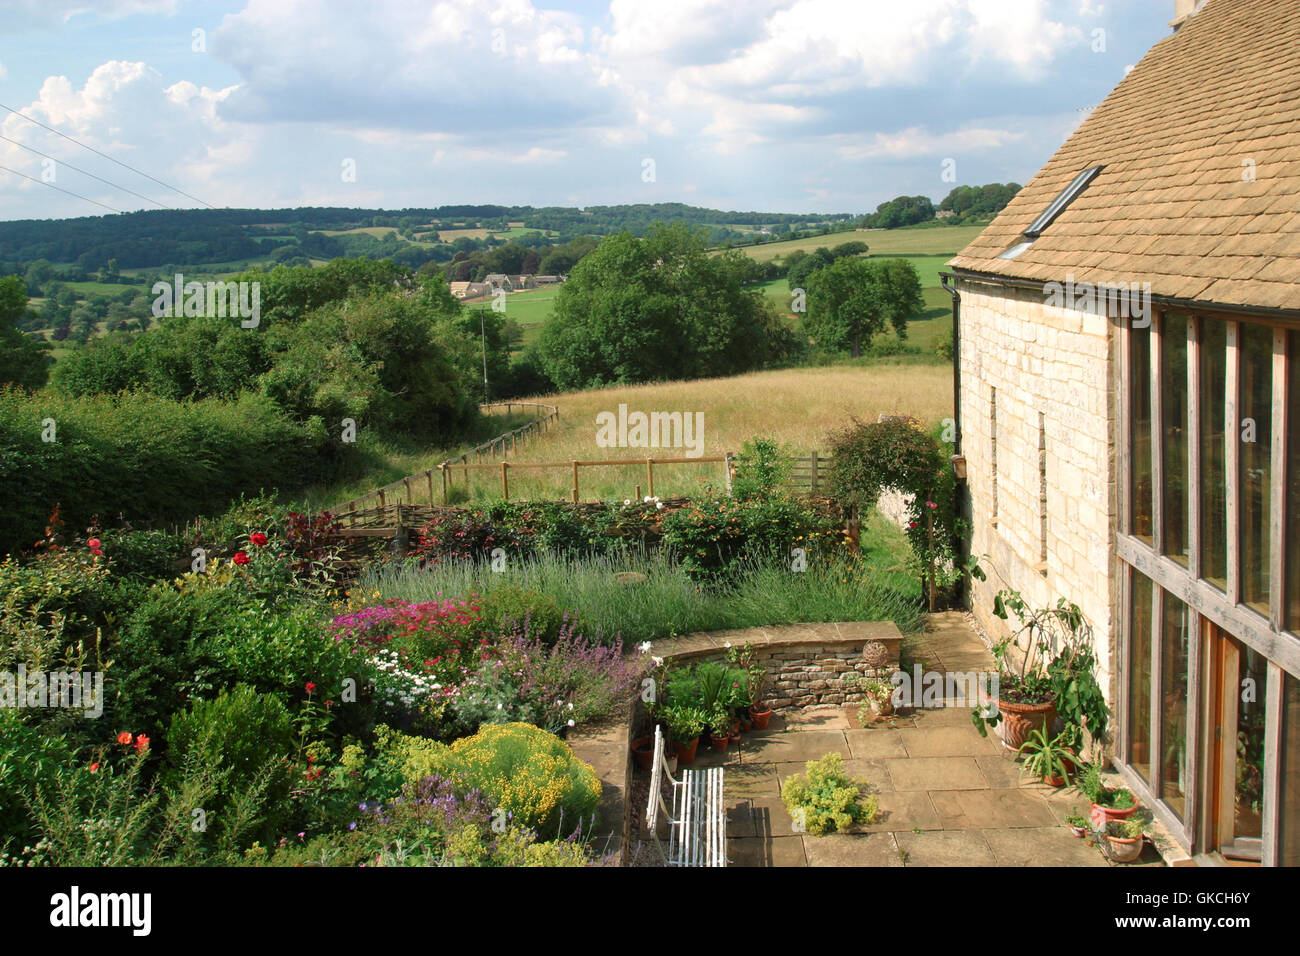 Regno Unito. Un patio giardino terrazza area con posti a sedere con viste aperte del paesaggio. Foto Stock